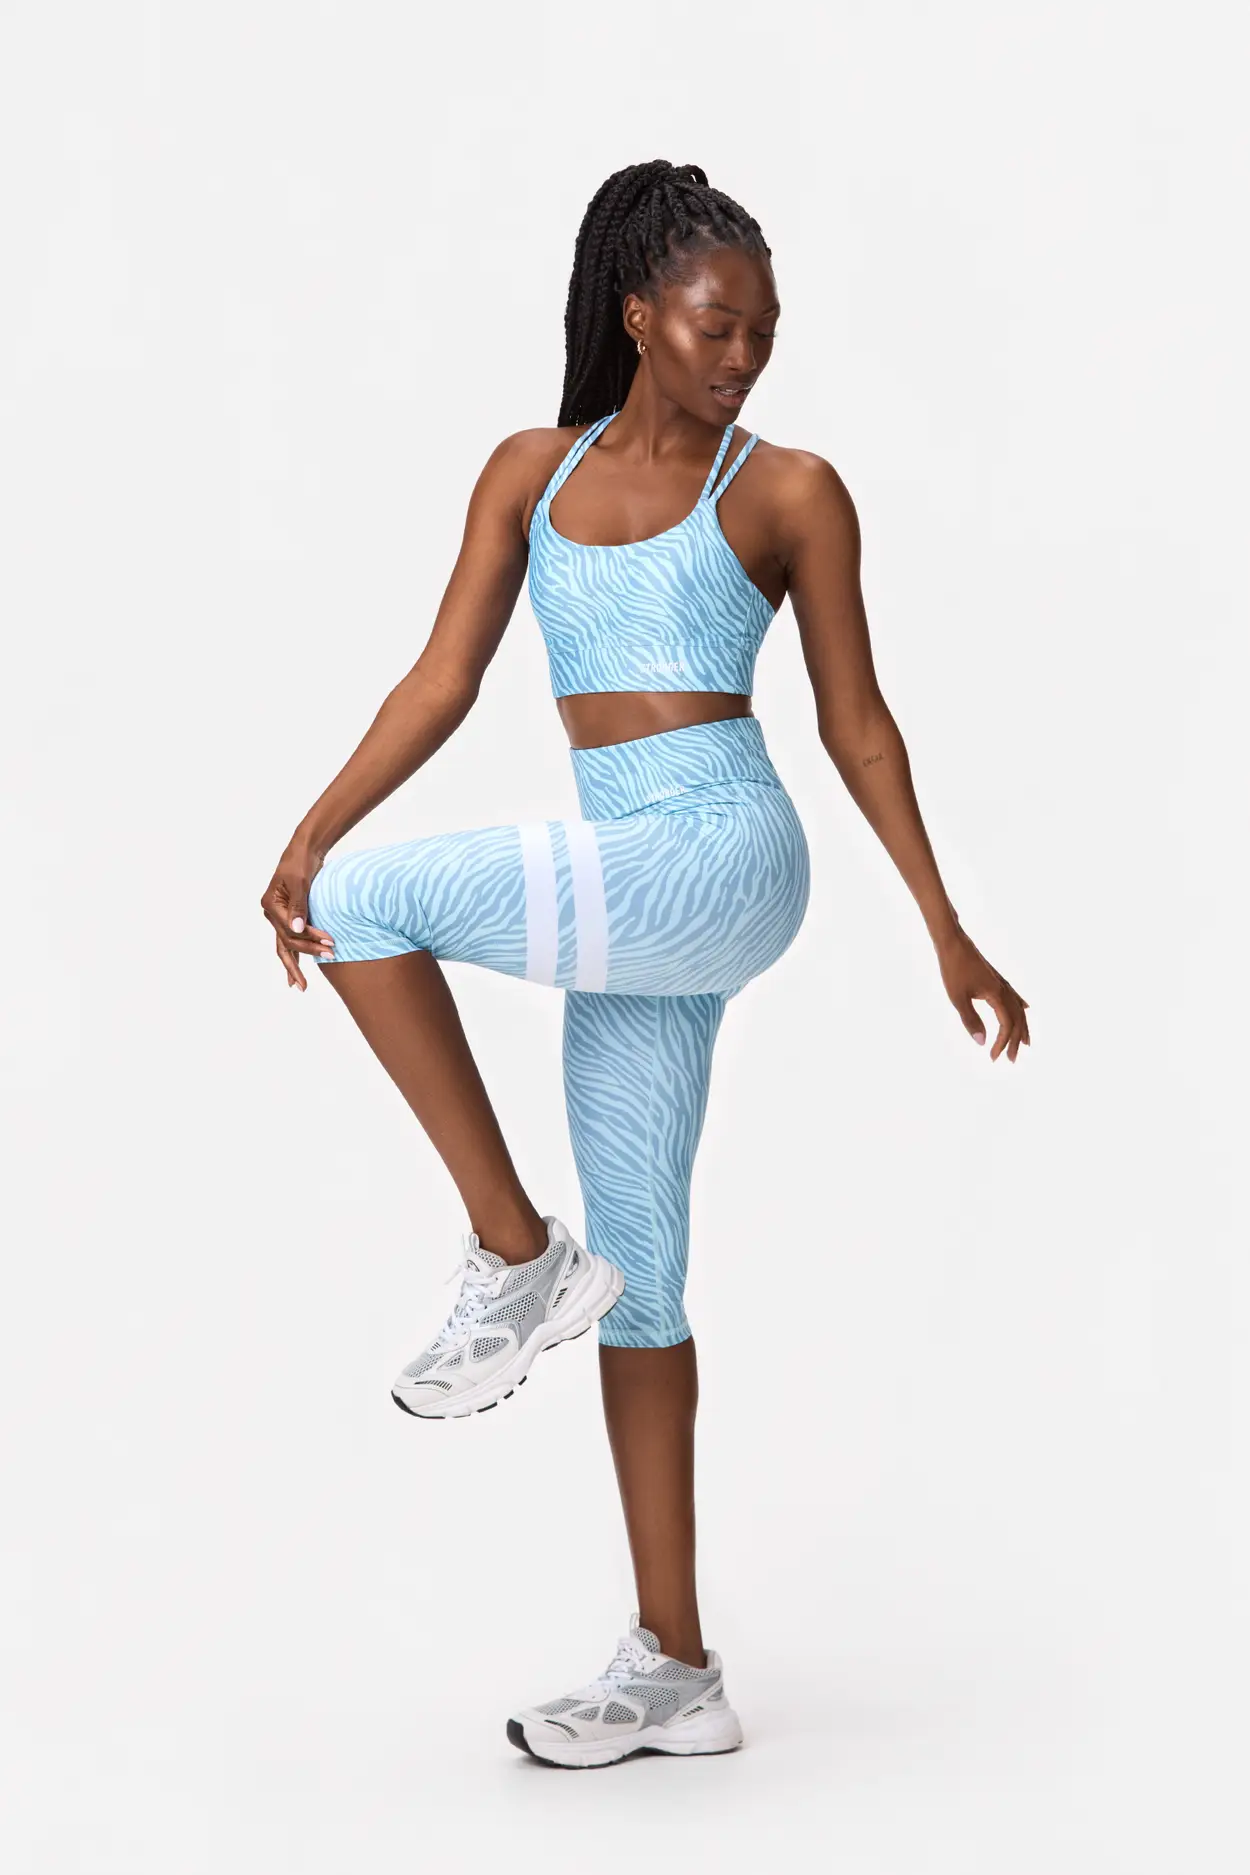 SUPERFLOWER Women's Capri Yoga Pants Workout Leggings Running